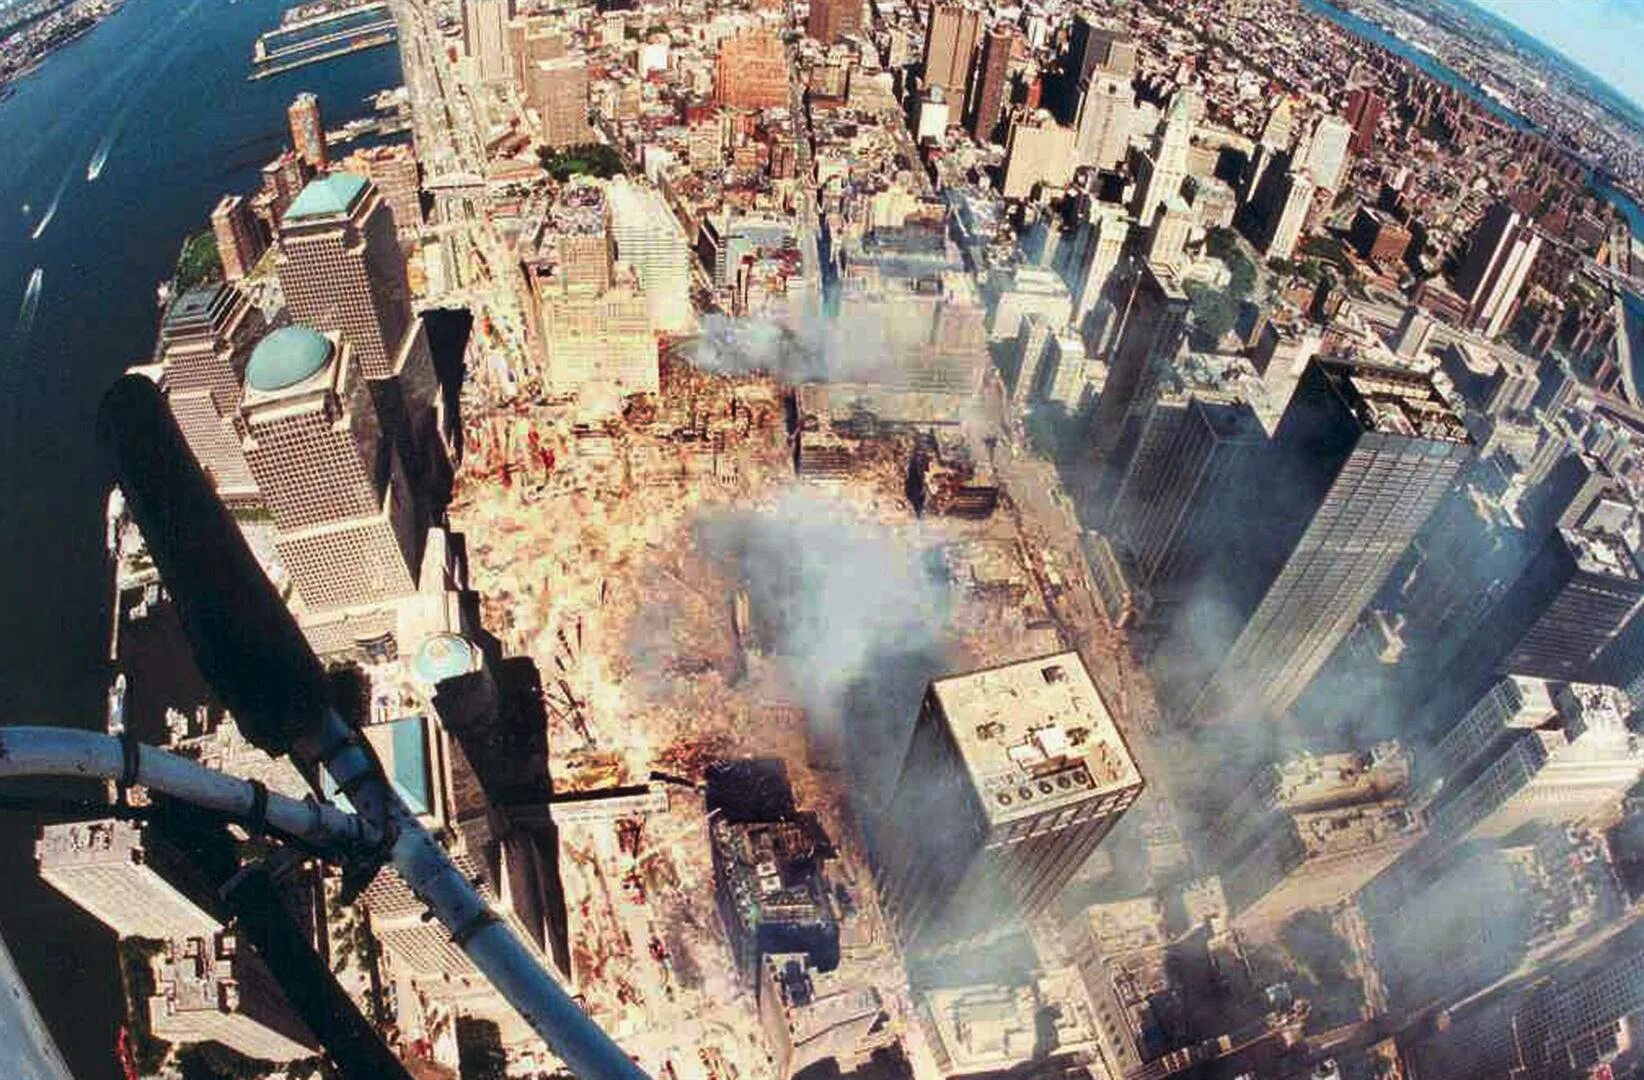 Нападение на торговый центр. Башни-Близнецы 11 сентября 2001. Башни ВТЦ 11 сентября 2001. Всемирный торговый центр в Нью-Йорке башни Близнецы.